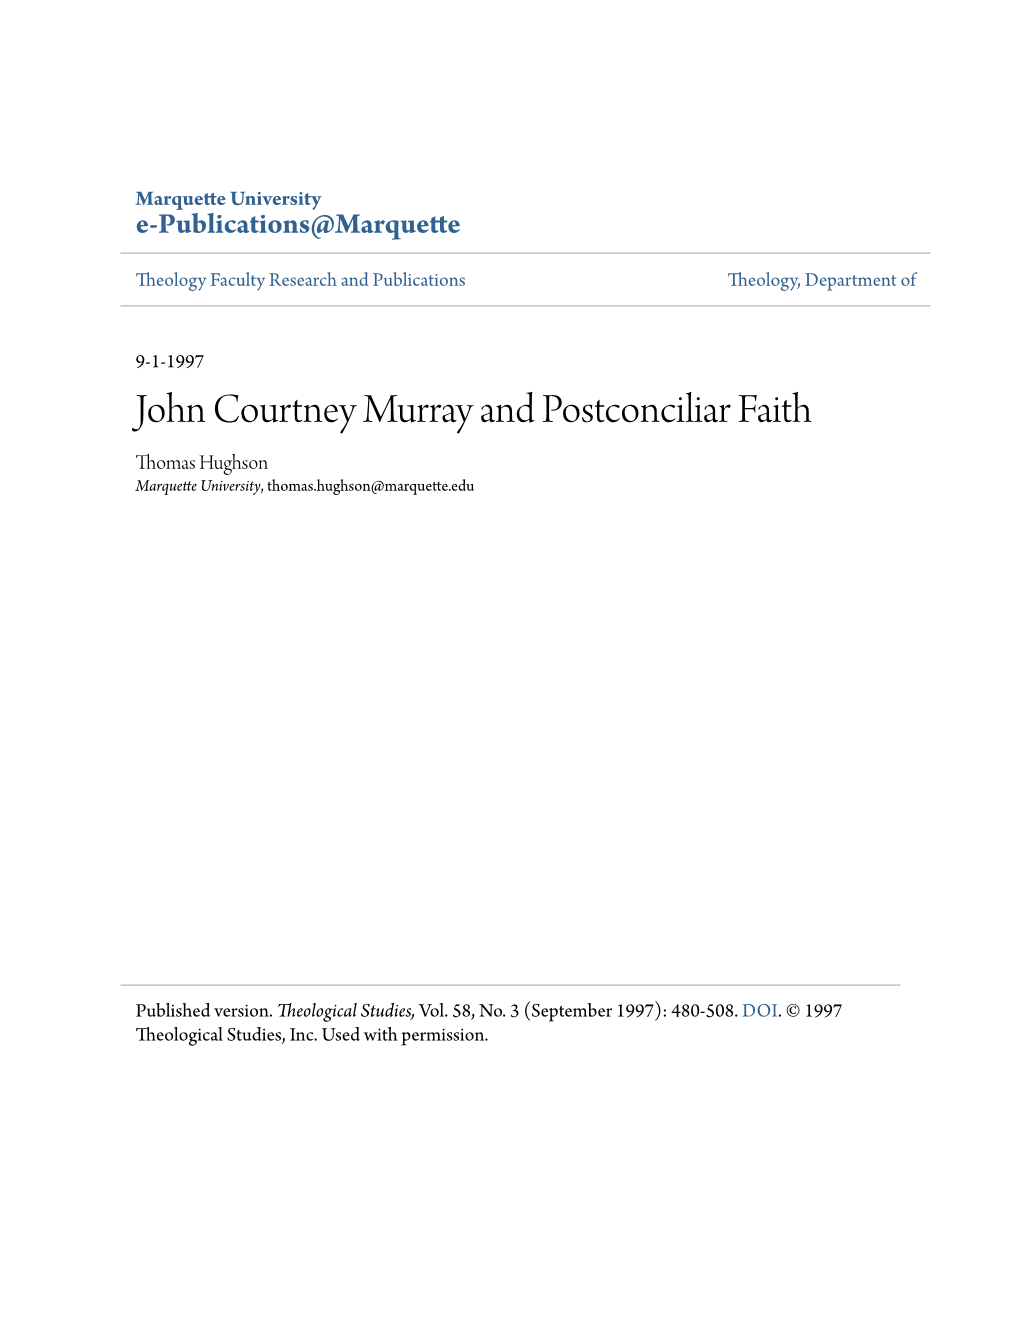 John Courtney Murray and Postconciliar Faith Thomas Hughson Marquette University, Thomas.Hughson@Marquette.Edu